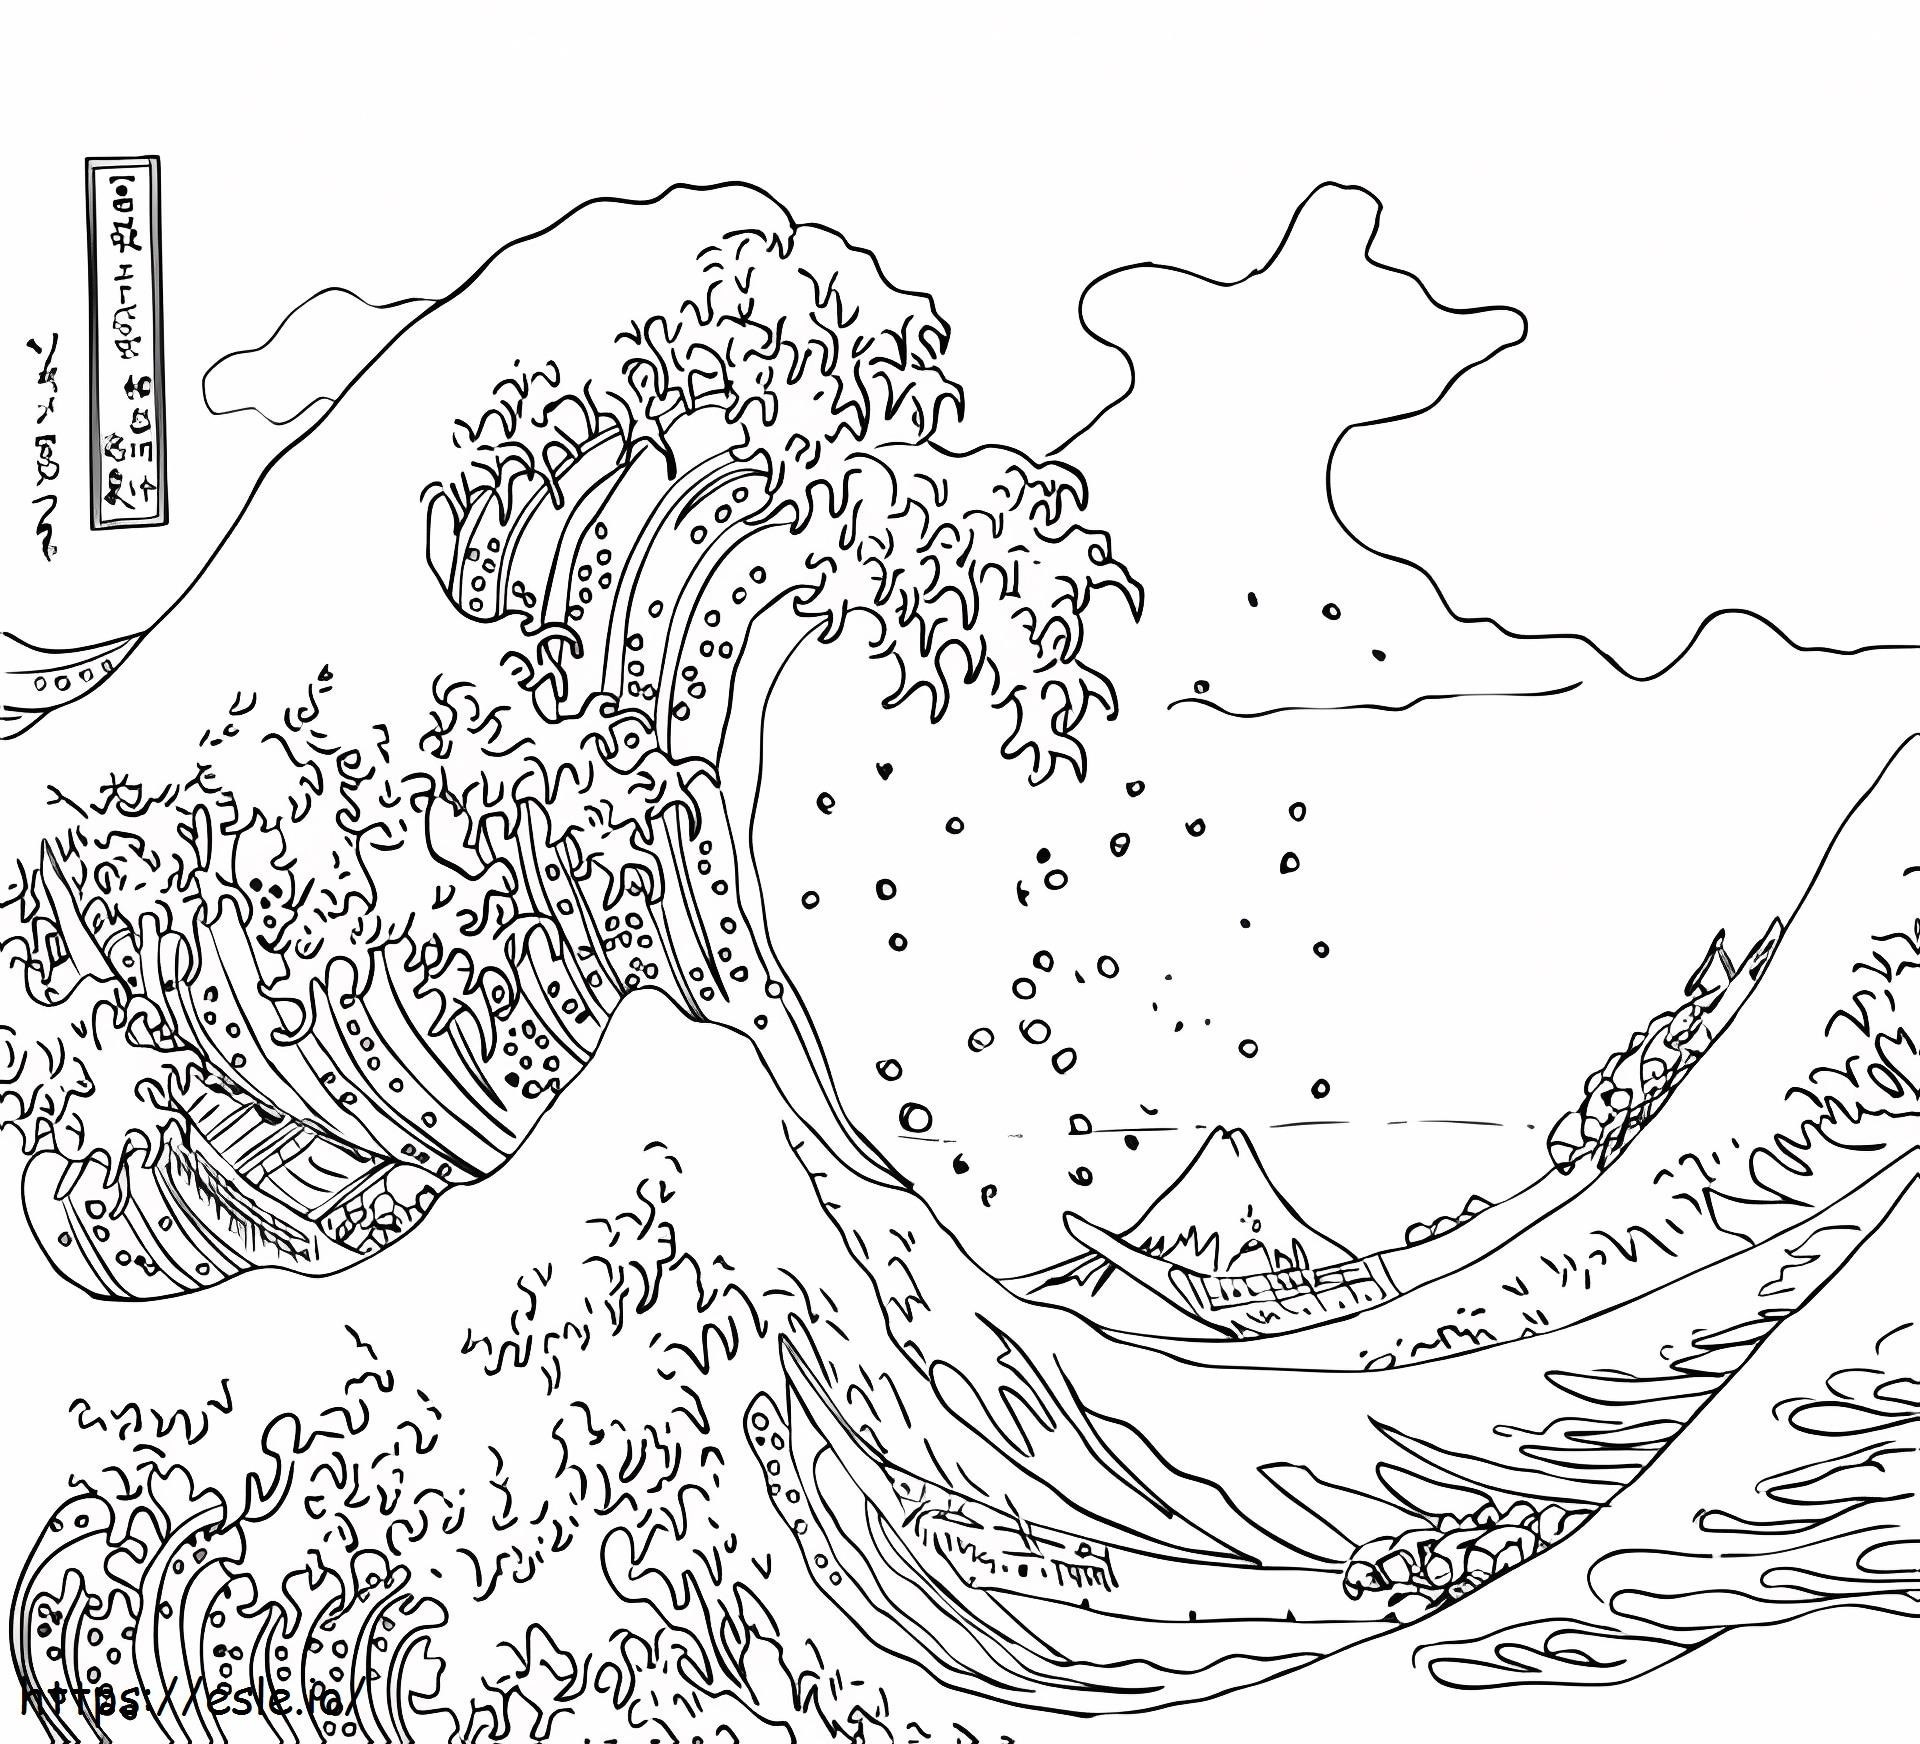  Suuri aalto Kanagawan edustalla A4 värityskuva